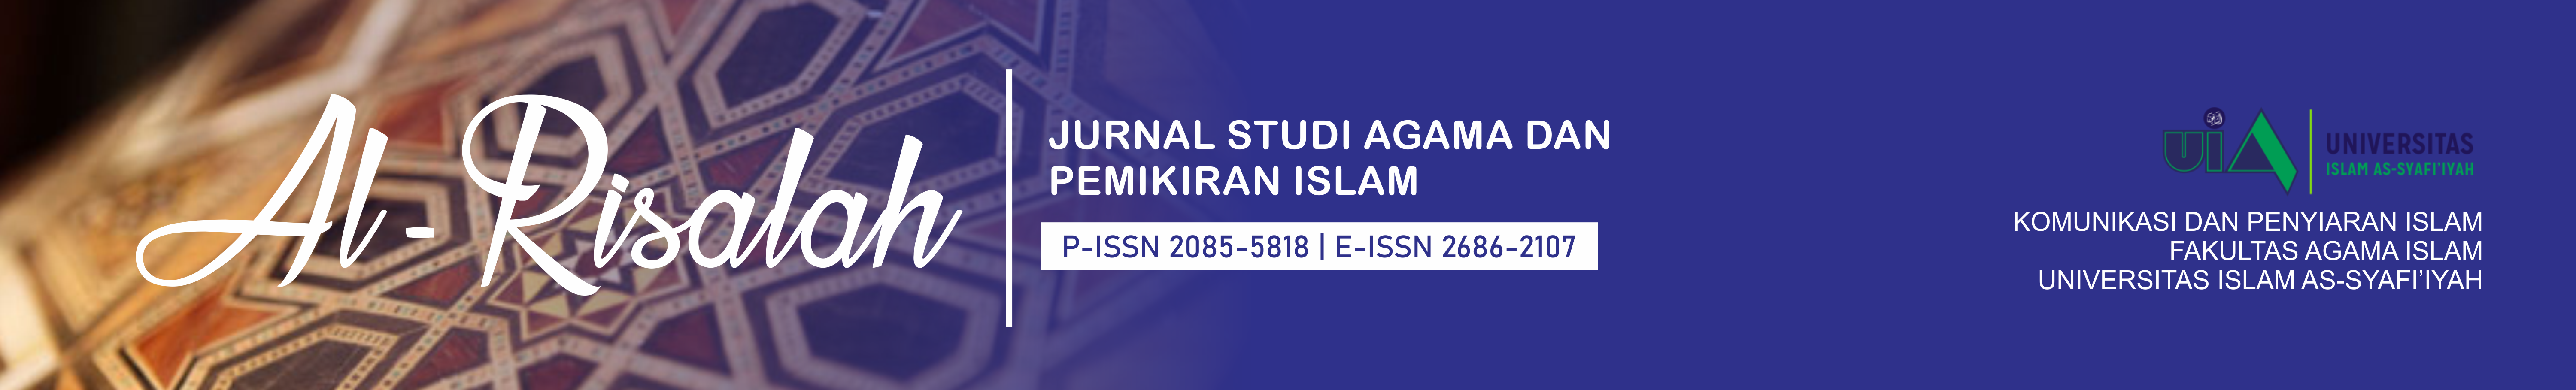 Al-Risalah : Jurnal Studi Agama dan Pemikiran Islam